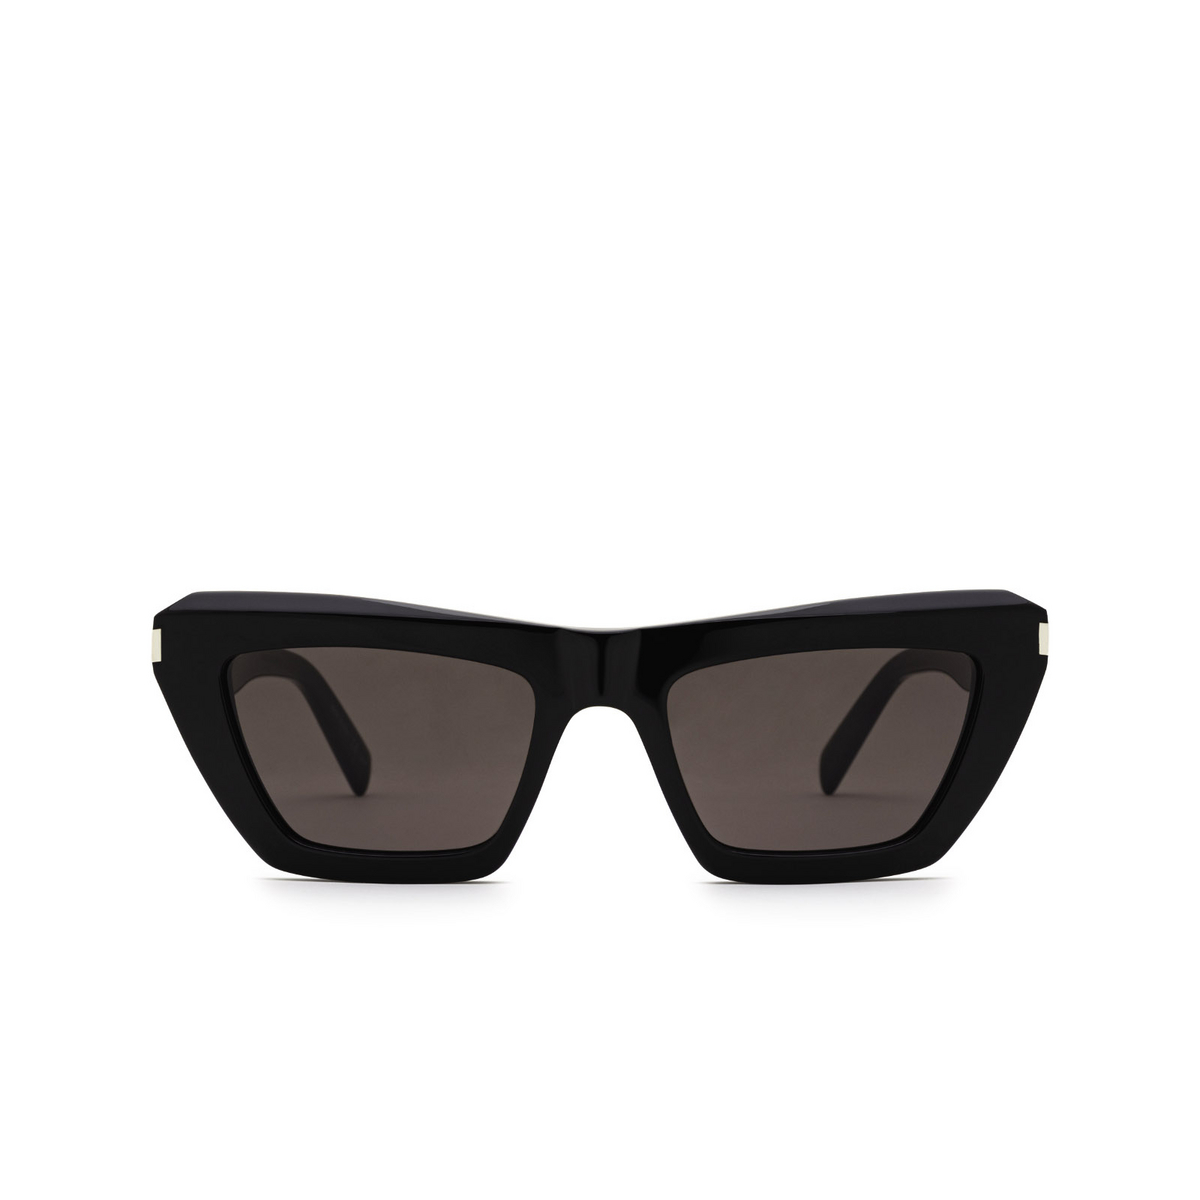 Saint Laurent® Cat-eye Sunglasses: SL 467 color Black 001 - front view.